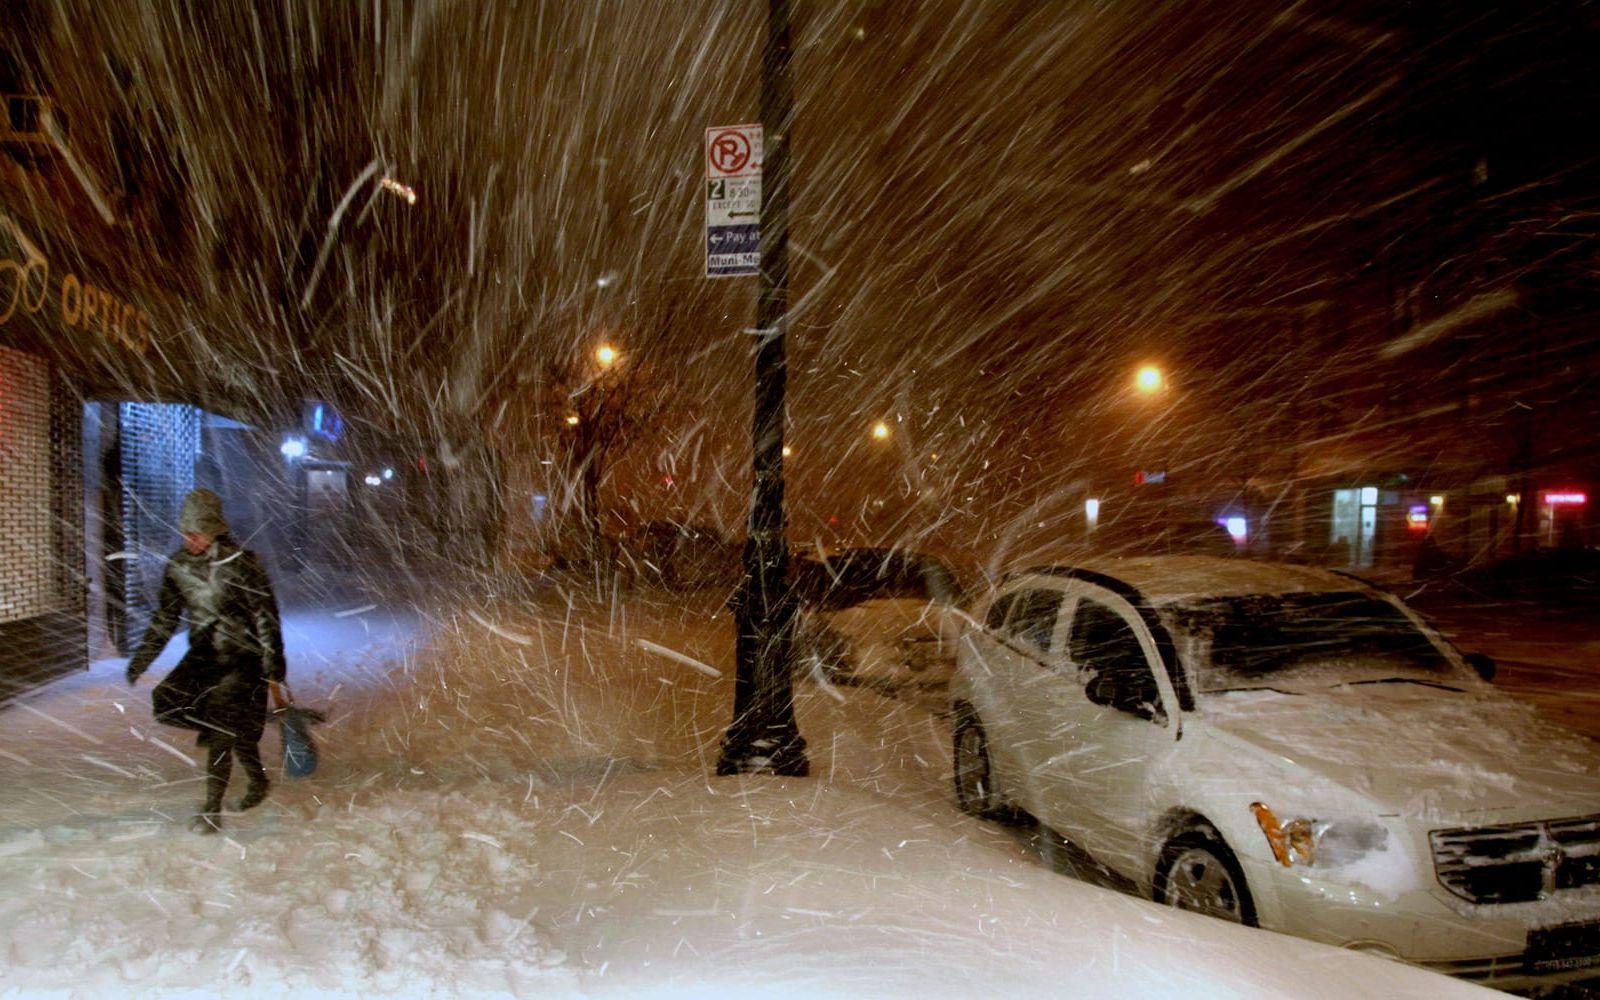 Så här har det sett ut tidigare år när New York drabbats av kraftiga snöoväder. Foto: TT